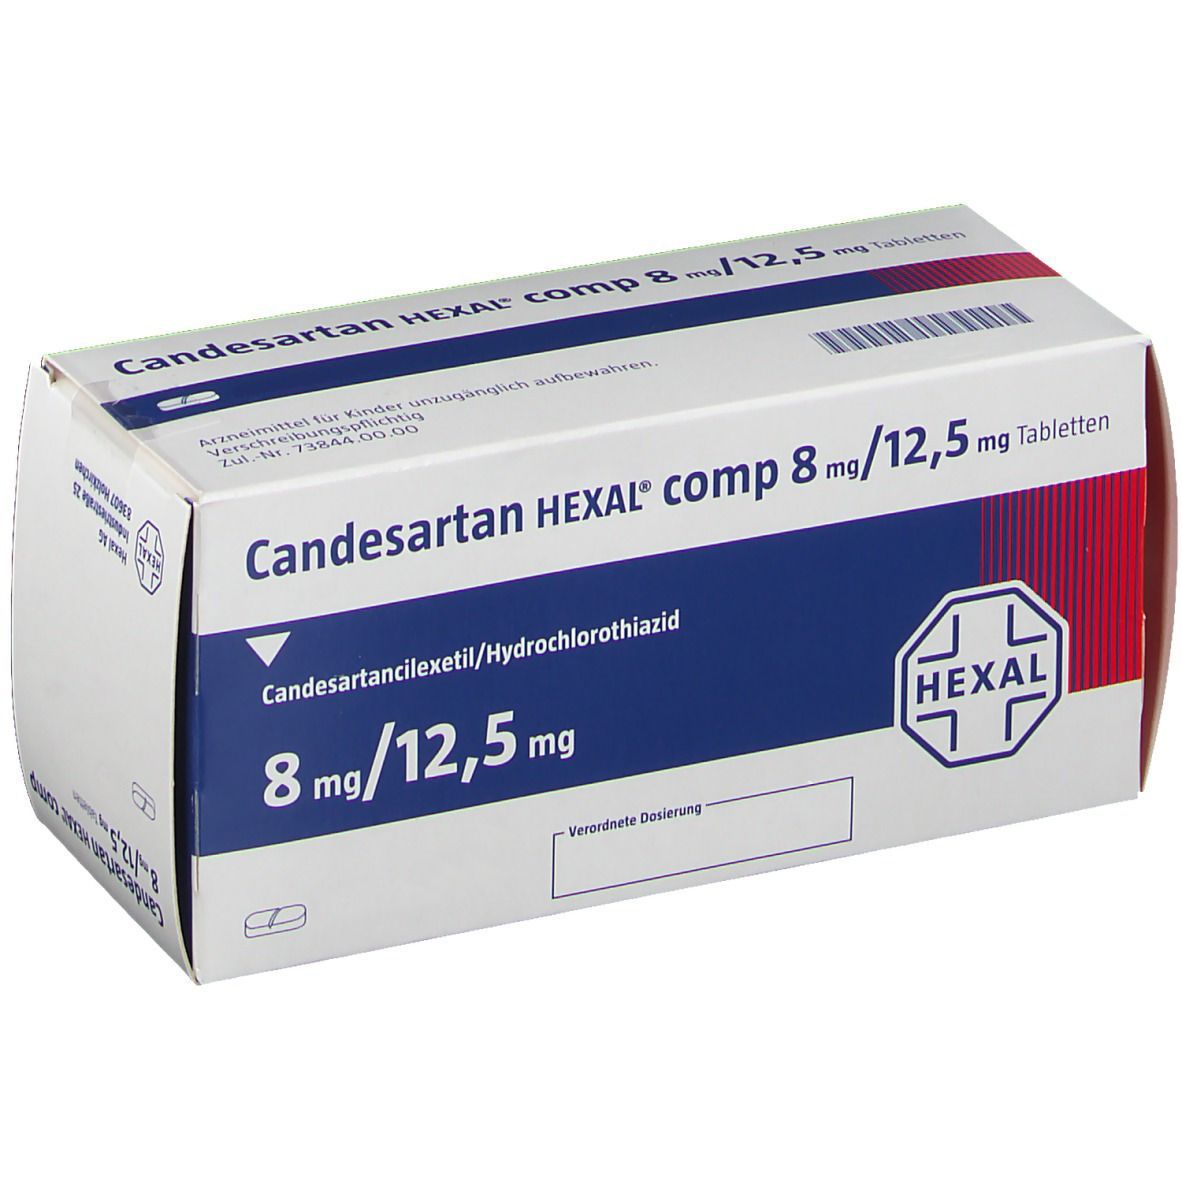 Candesartan HEXAL® comp 8 mg/12,5 mg